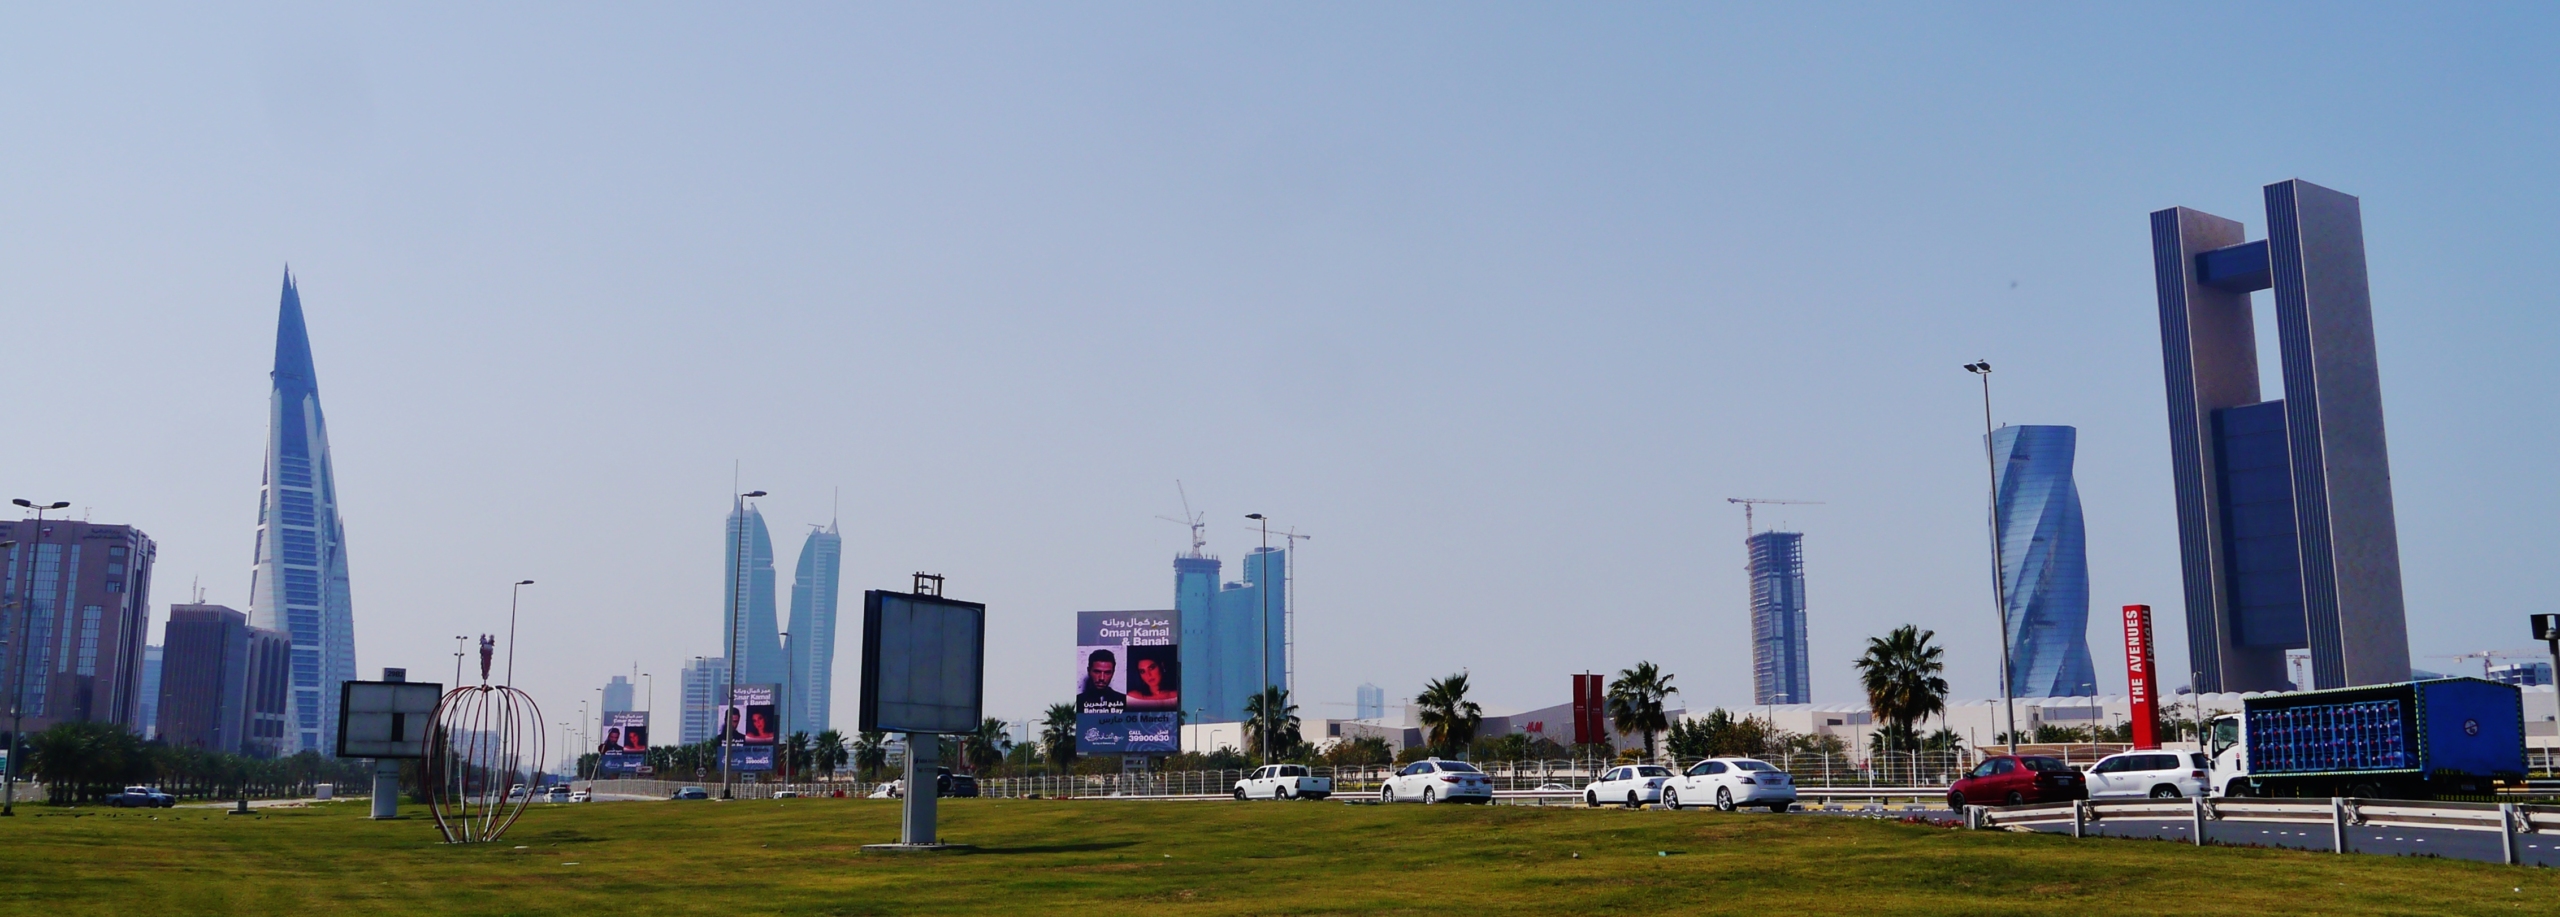 Bahrain rulez: WHO declares Manama “Health City 2021”